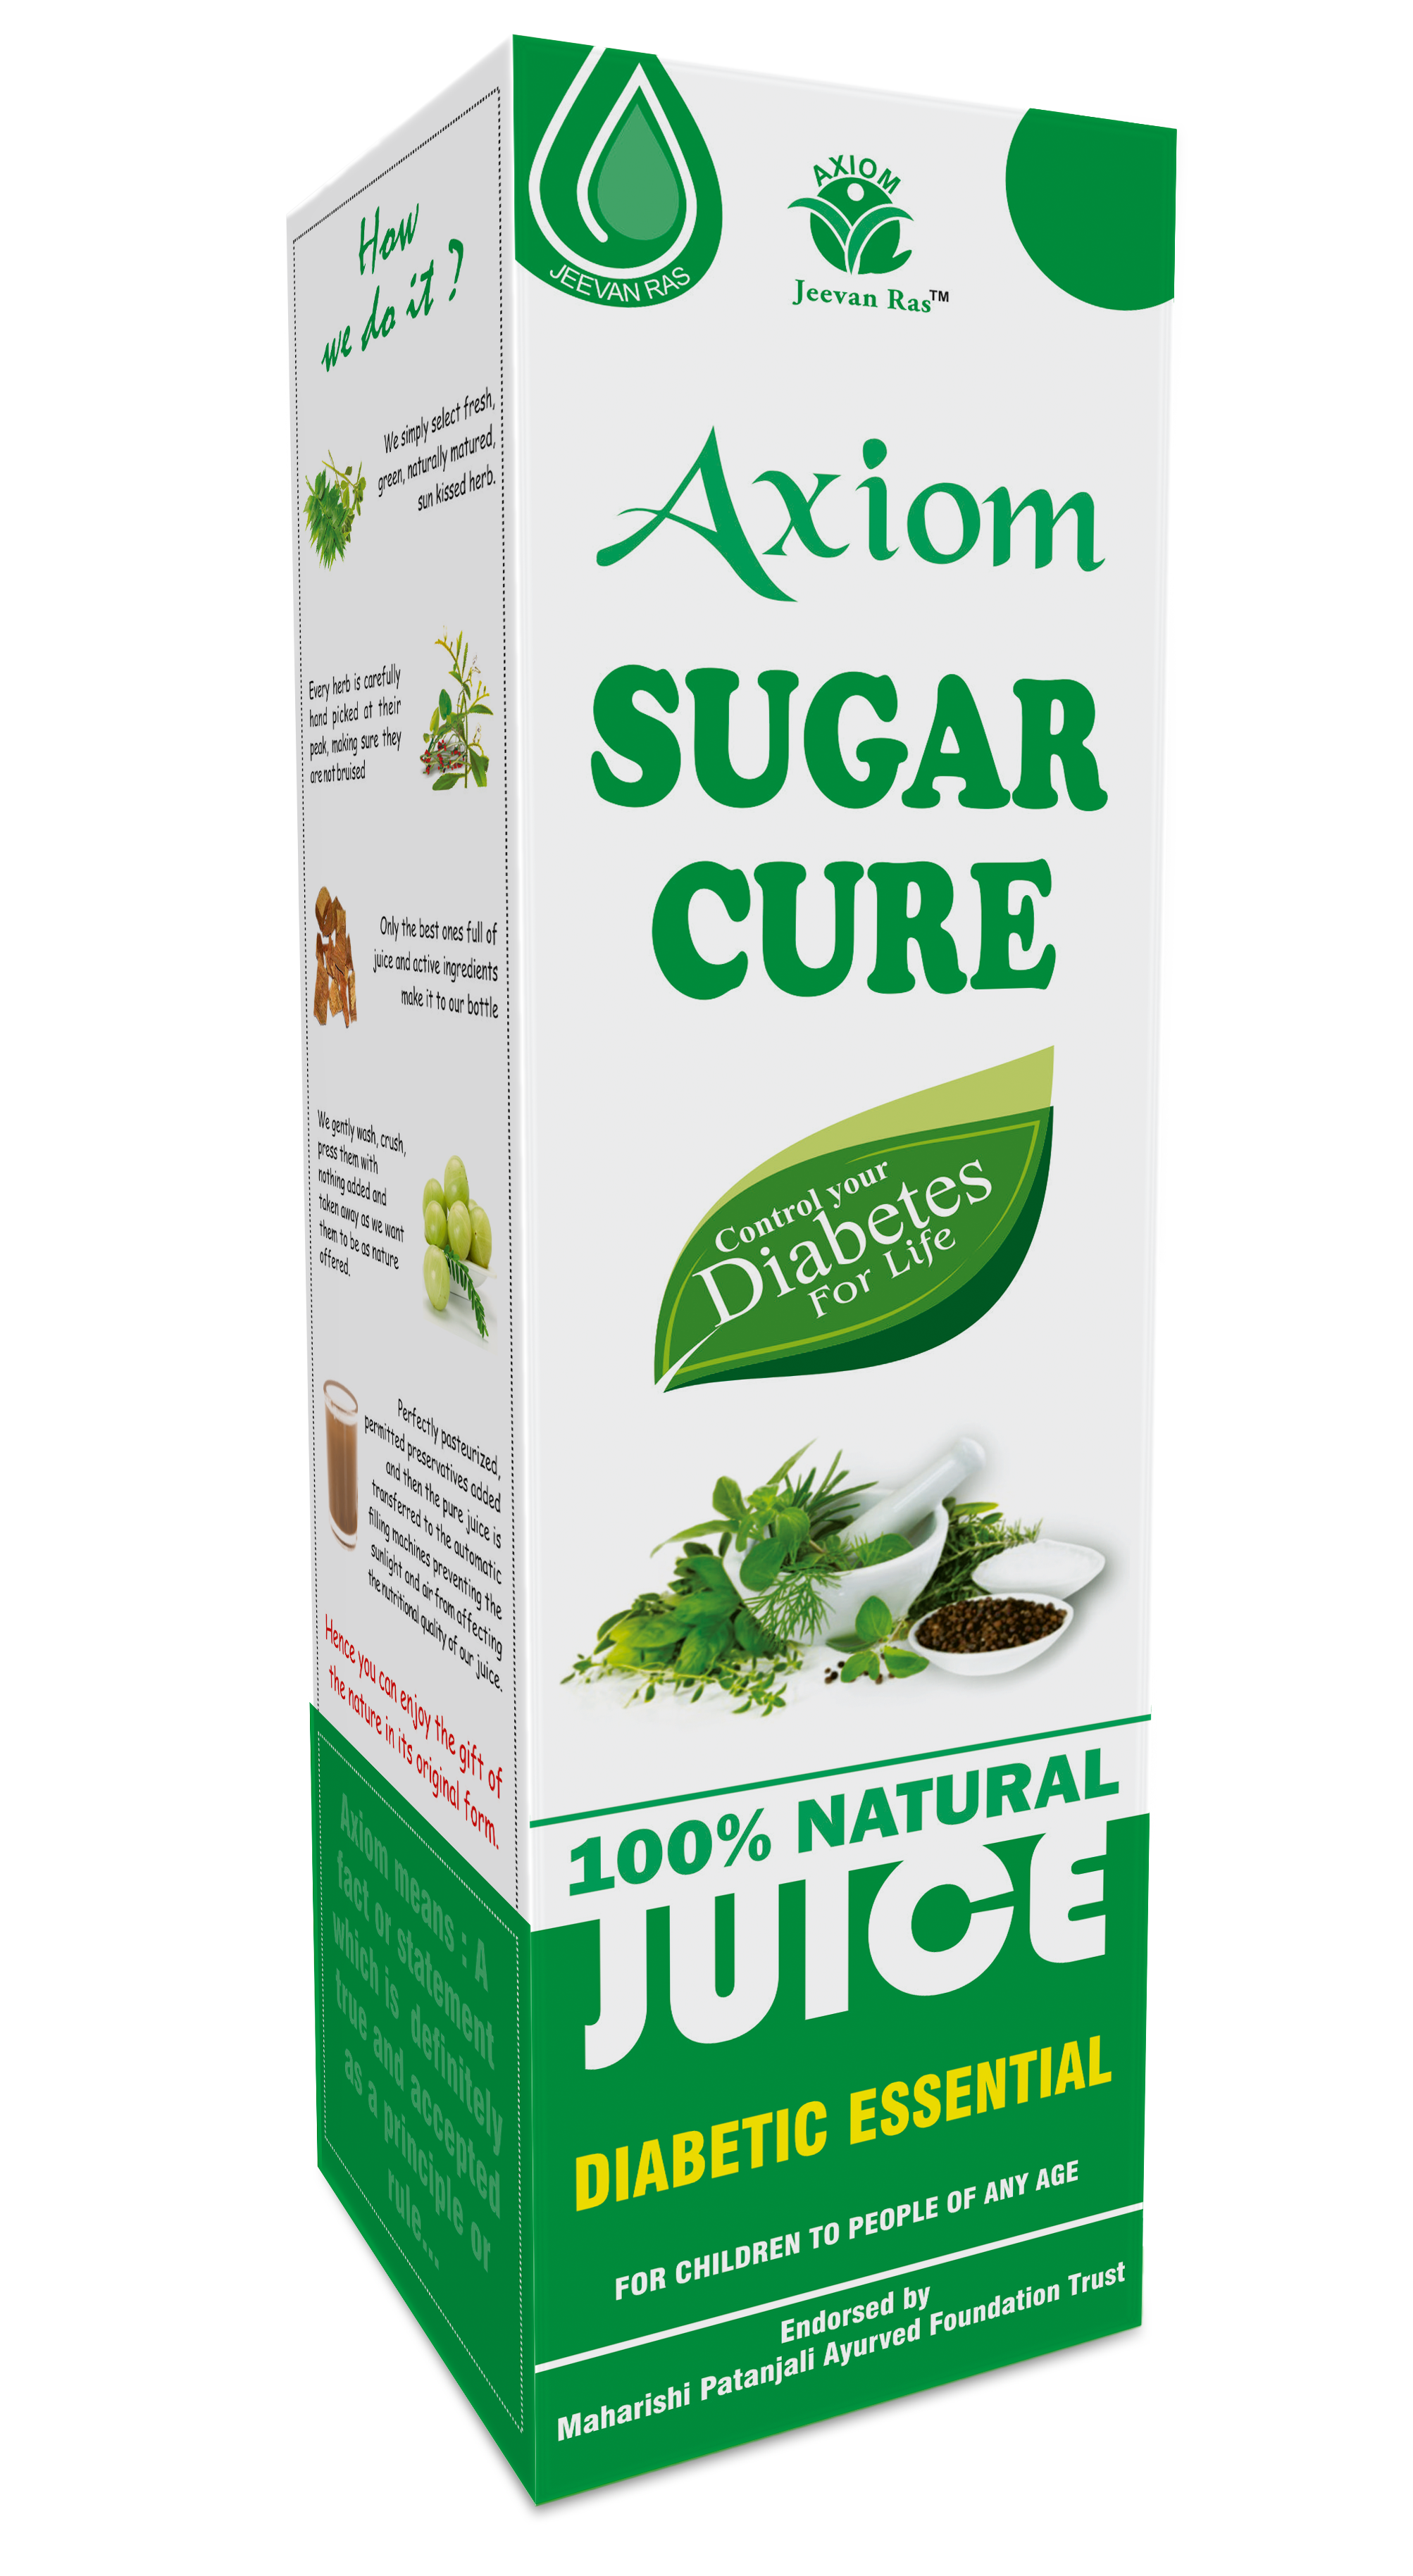 Buy Axiom Sugar Cure Juice at Best Price Online